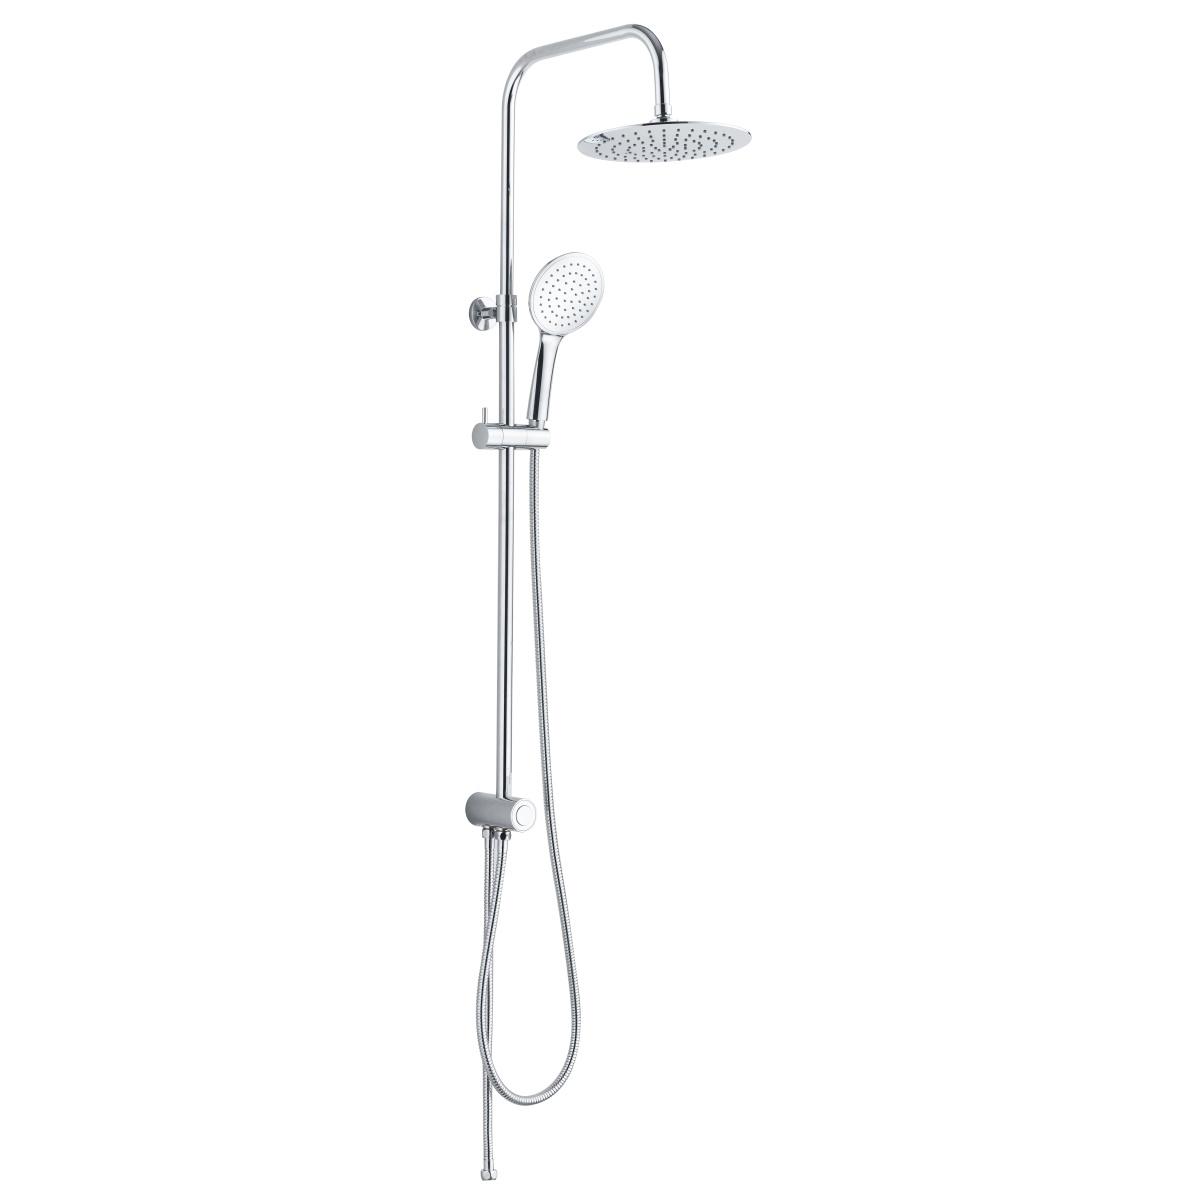 YS34107 Cột sen tắm, cột tắm mưa có nút bấm chuyển hướng, có thể điều chỉnh độ cao;